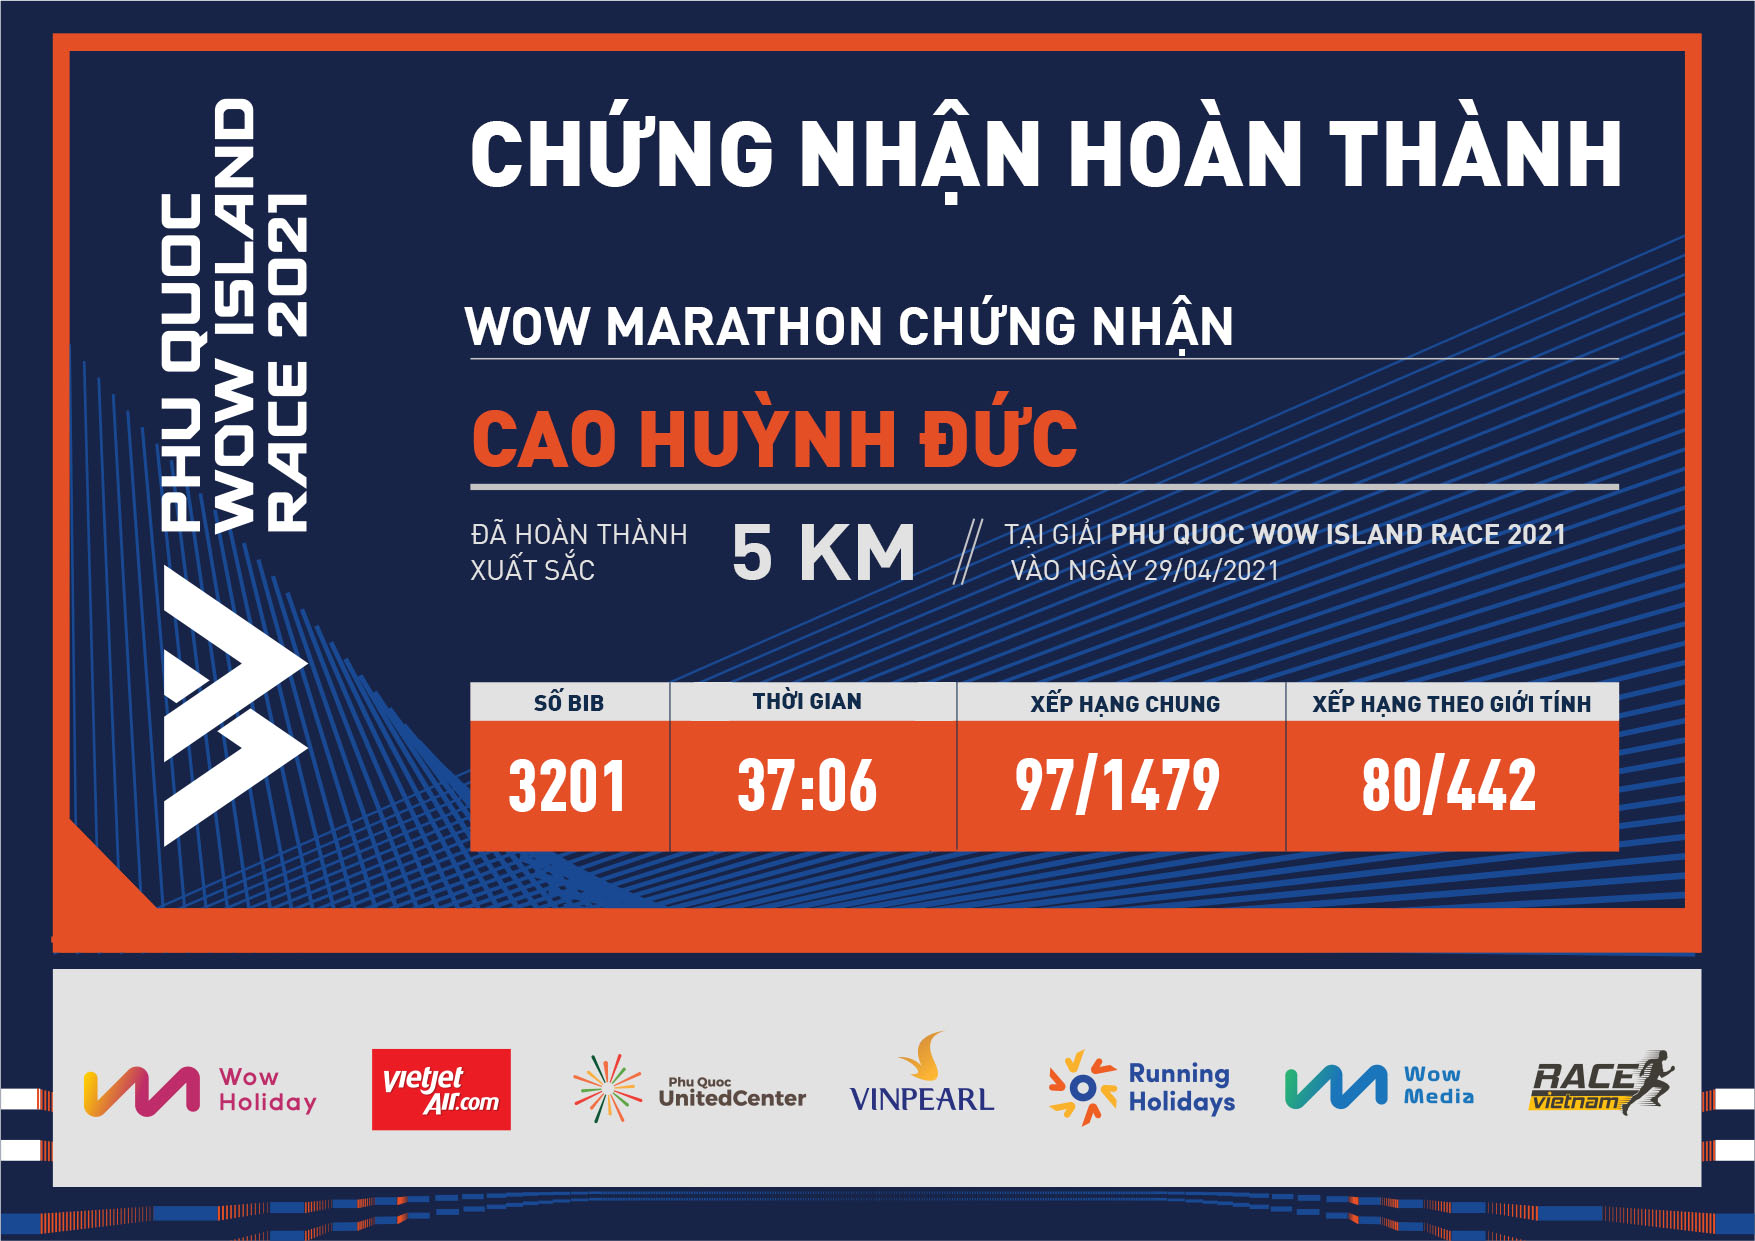 3201 - Cao Huỳnh Đức